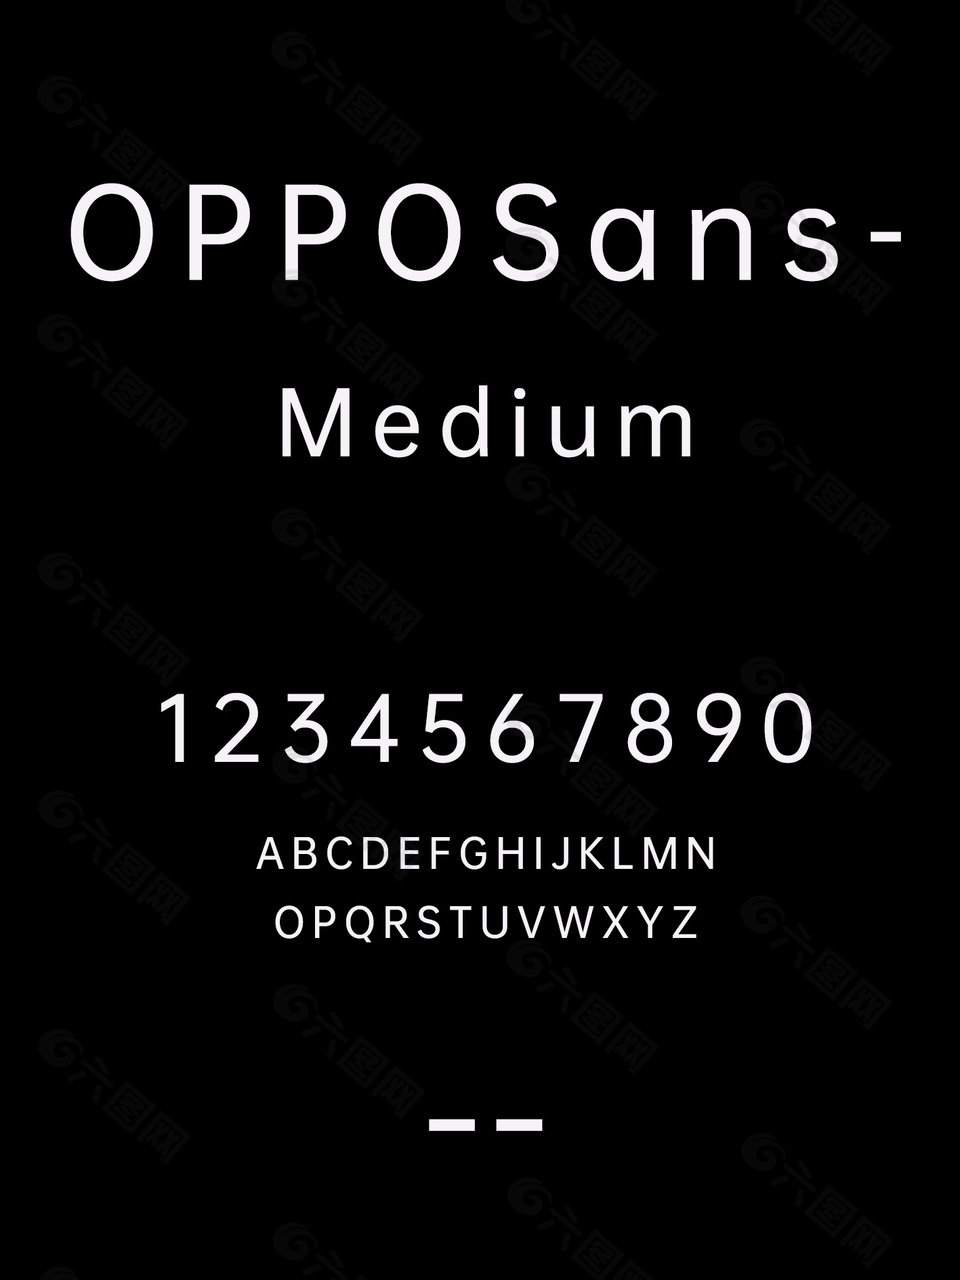 OPPOSans-Medium安装包下载